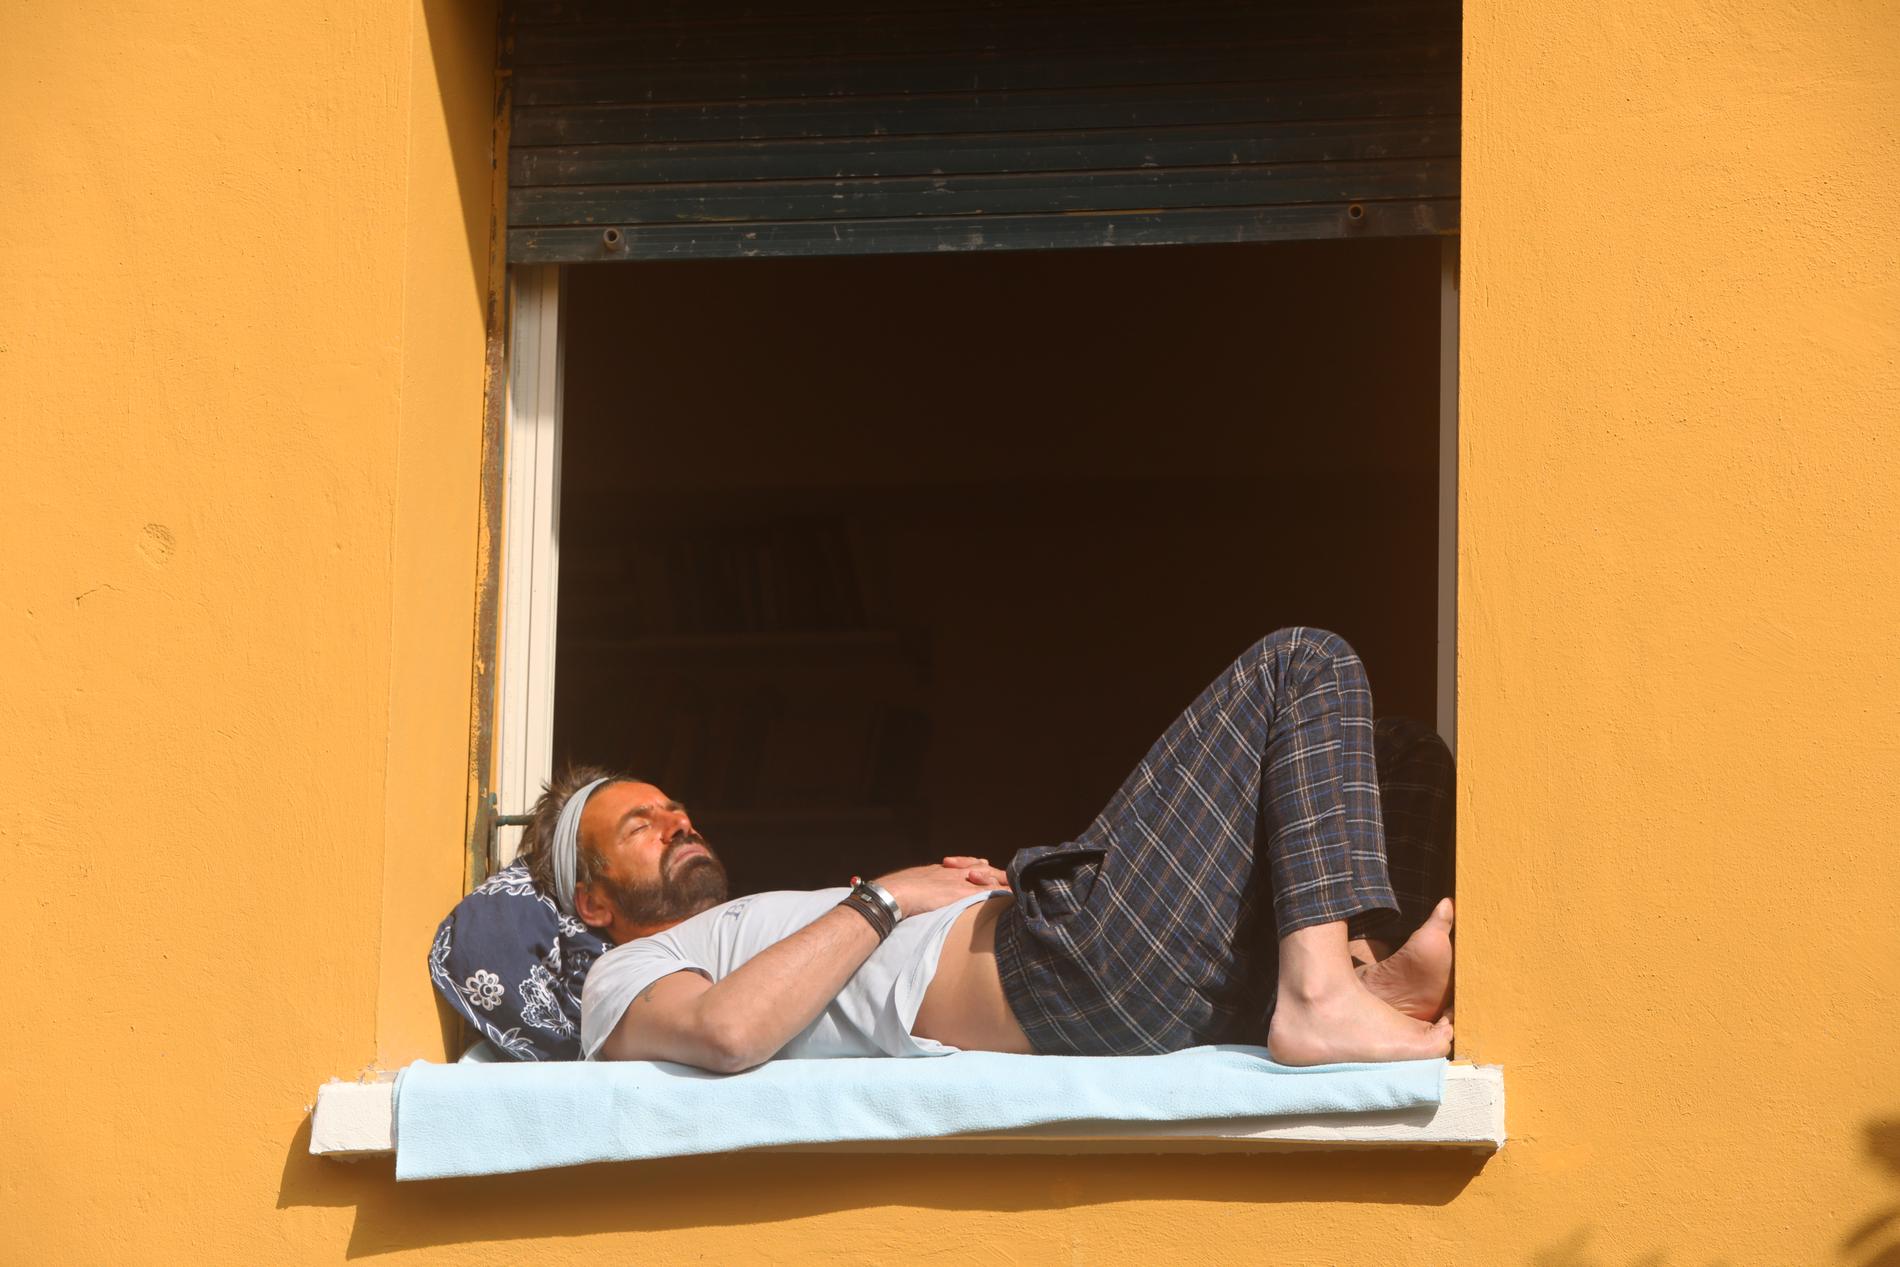 ROM, ITALIEN I coronavirusets tid spenderar fler och fler italienare sin tid hemma i lägenheten, gärna på balkongen. 